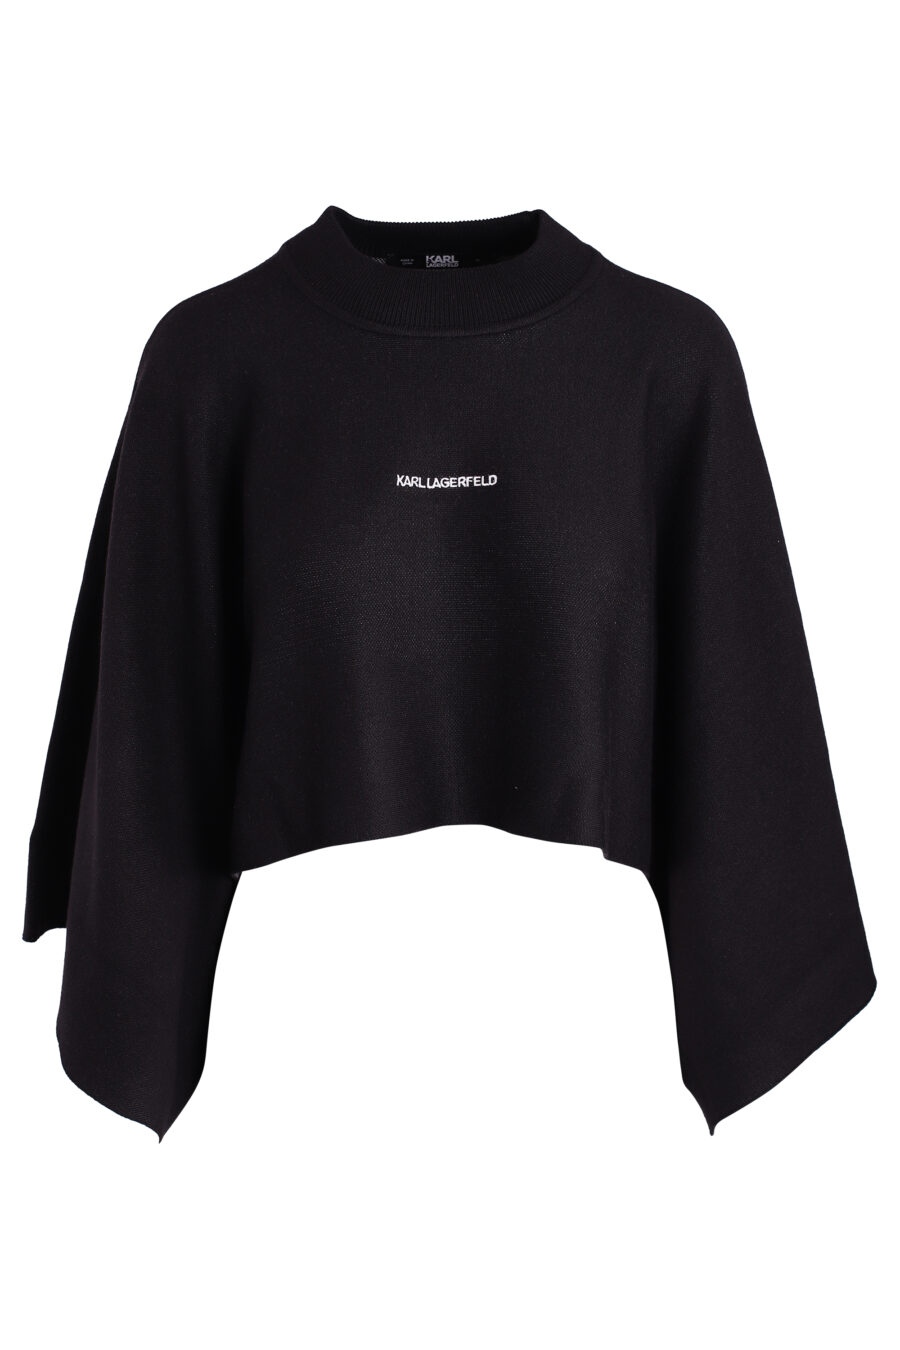 Jersey negro con mangas anchas y logo pequeño - IMG 3366